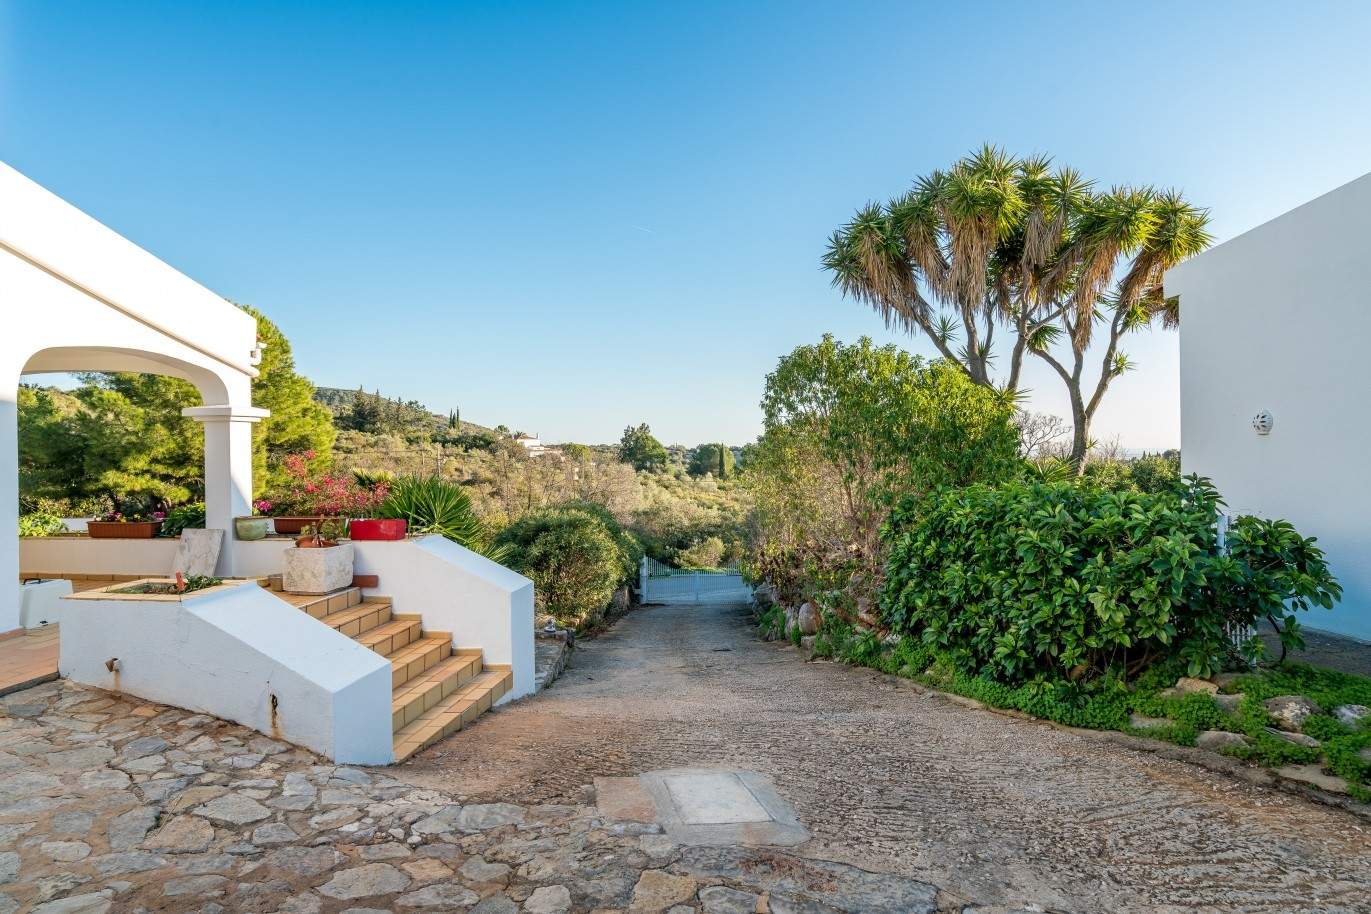 Propriedade à venda, piscina, vista mar, Santa Bárbara Nexe, Algarve_72178